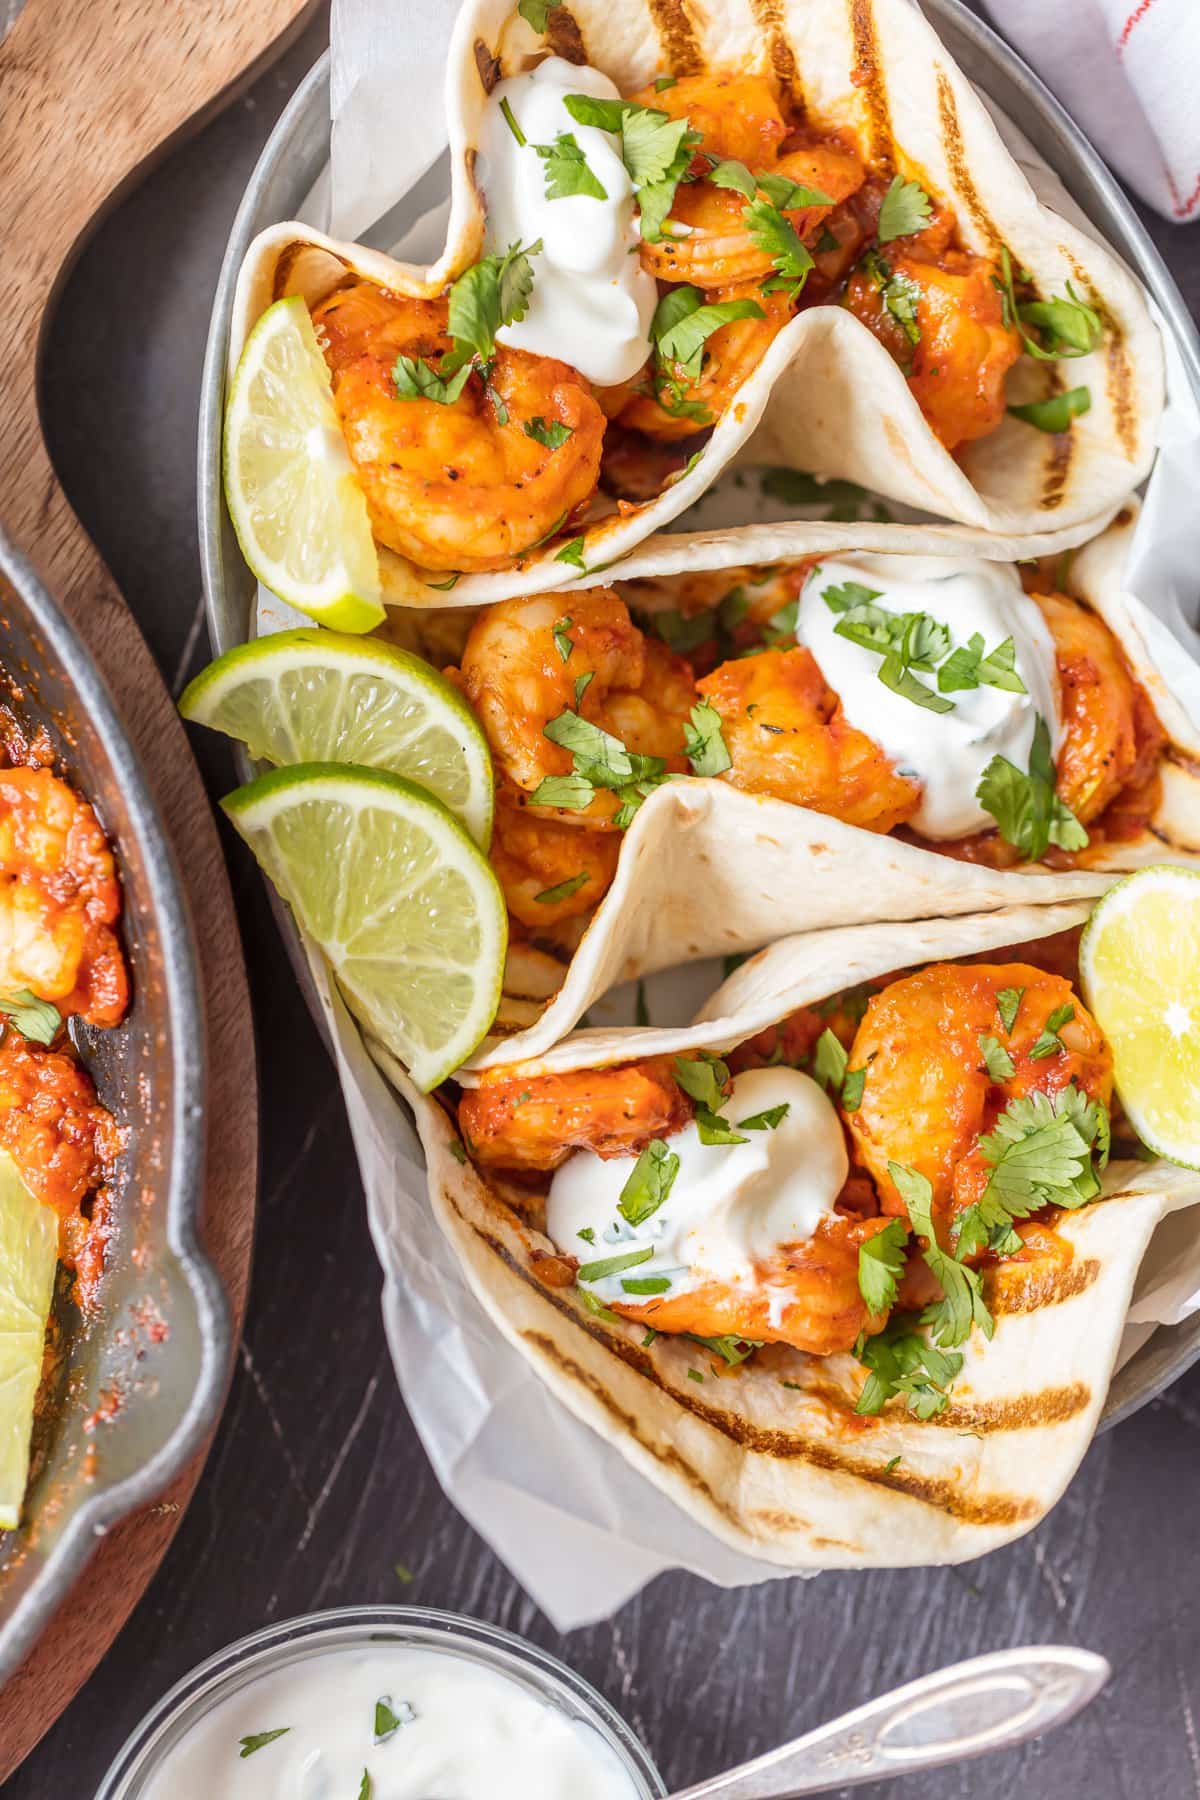 Spicy shrimp recipe for tacos